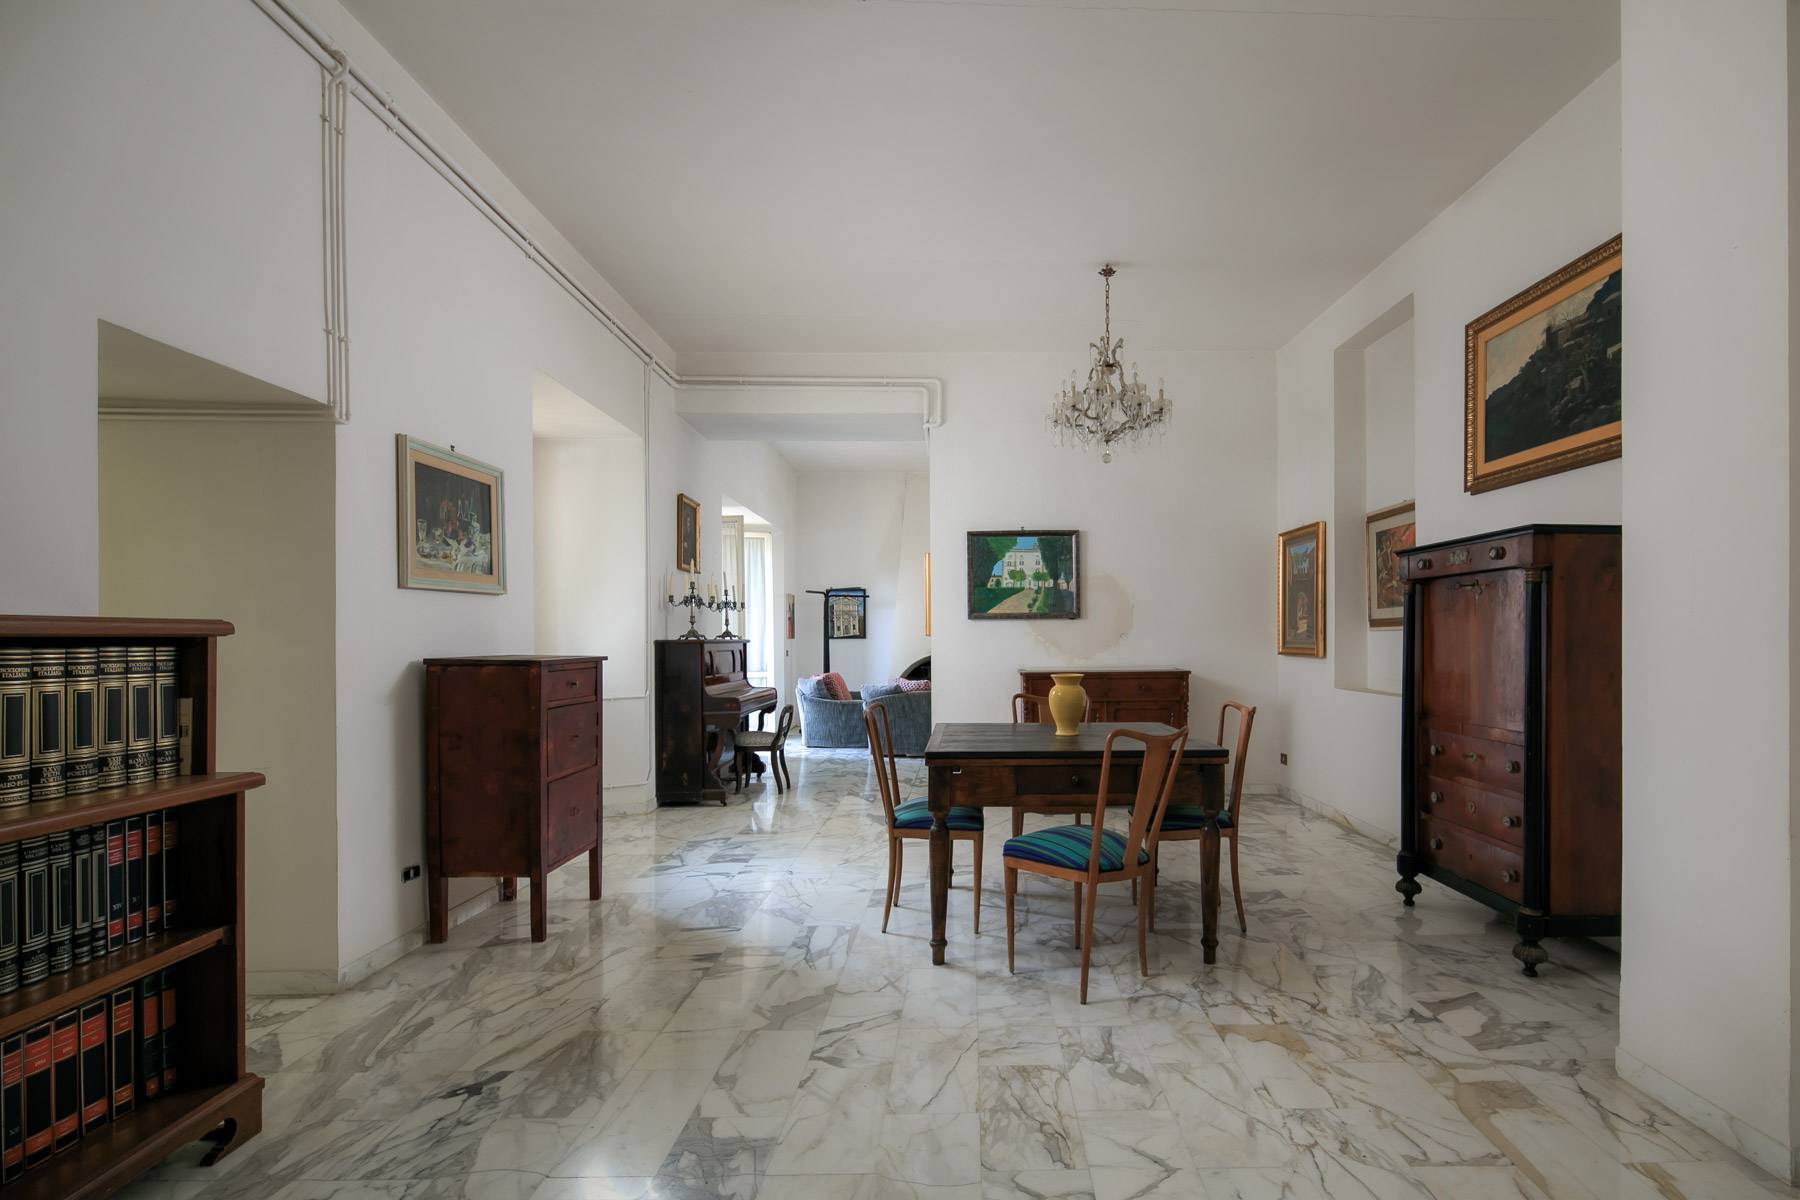 Villa in Vendita a Montepulciano: 5 locali, 2400 mq - Foto 9